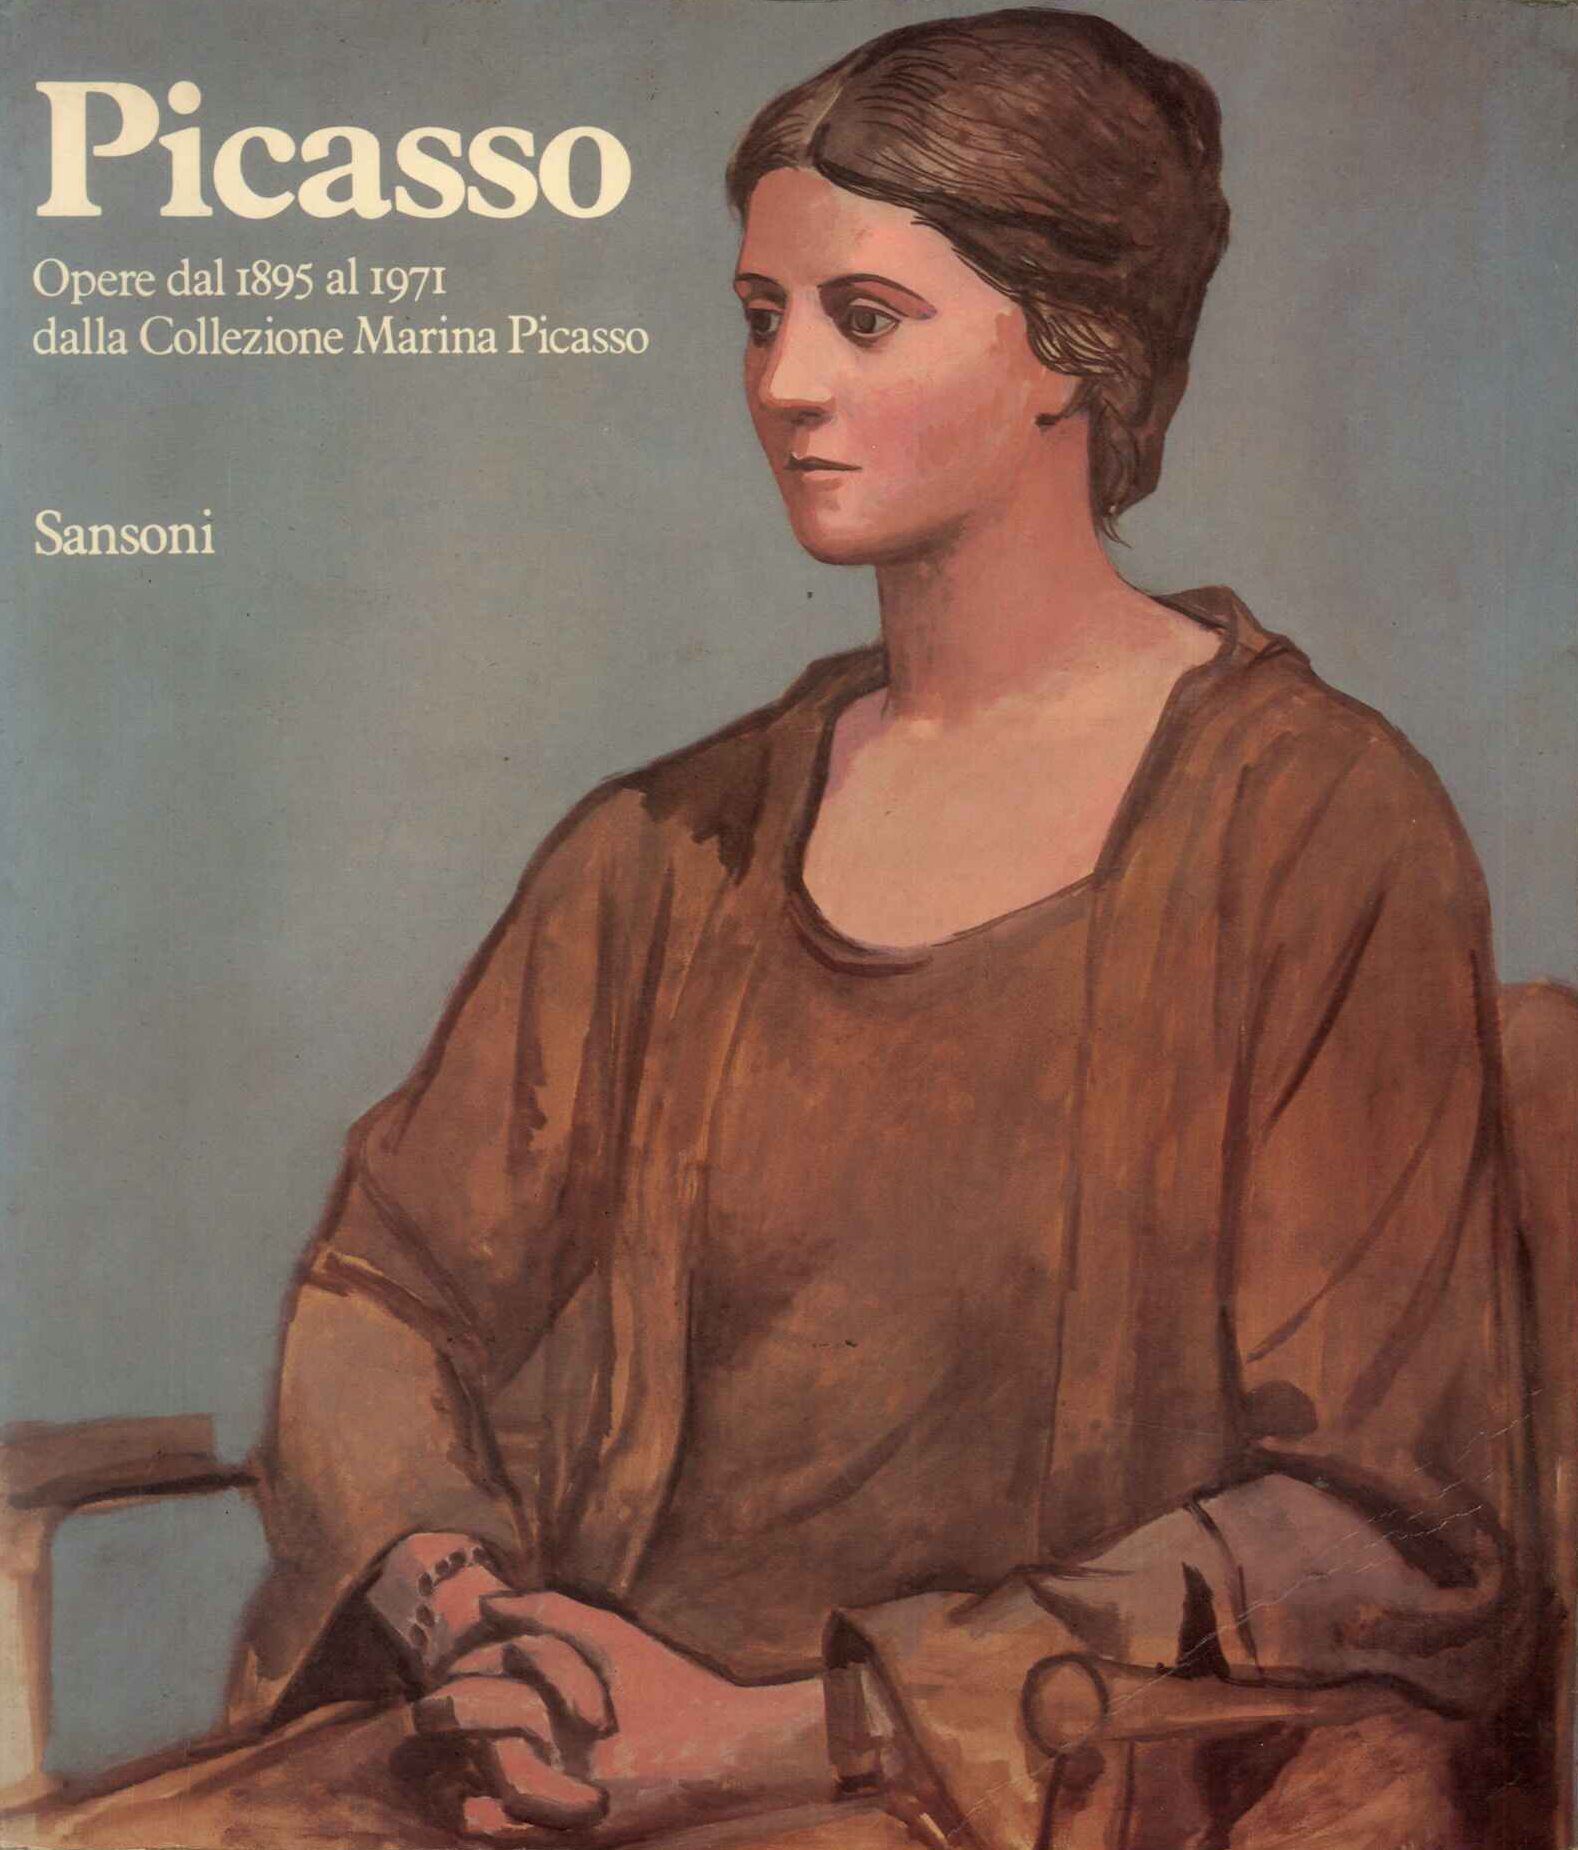 Picasso - Opere dal 1895 al 1971 dalla colezione Marina Picasso